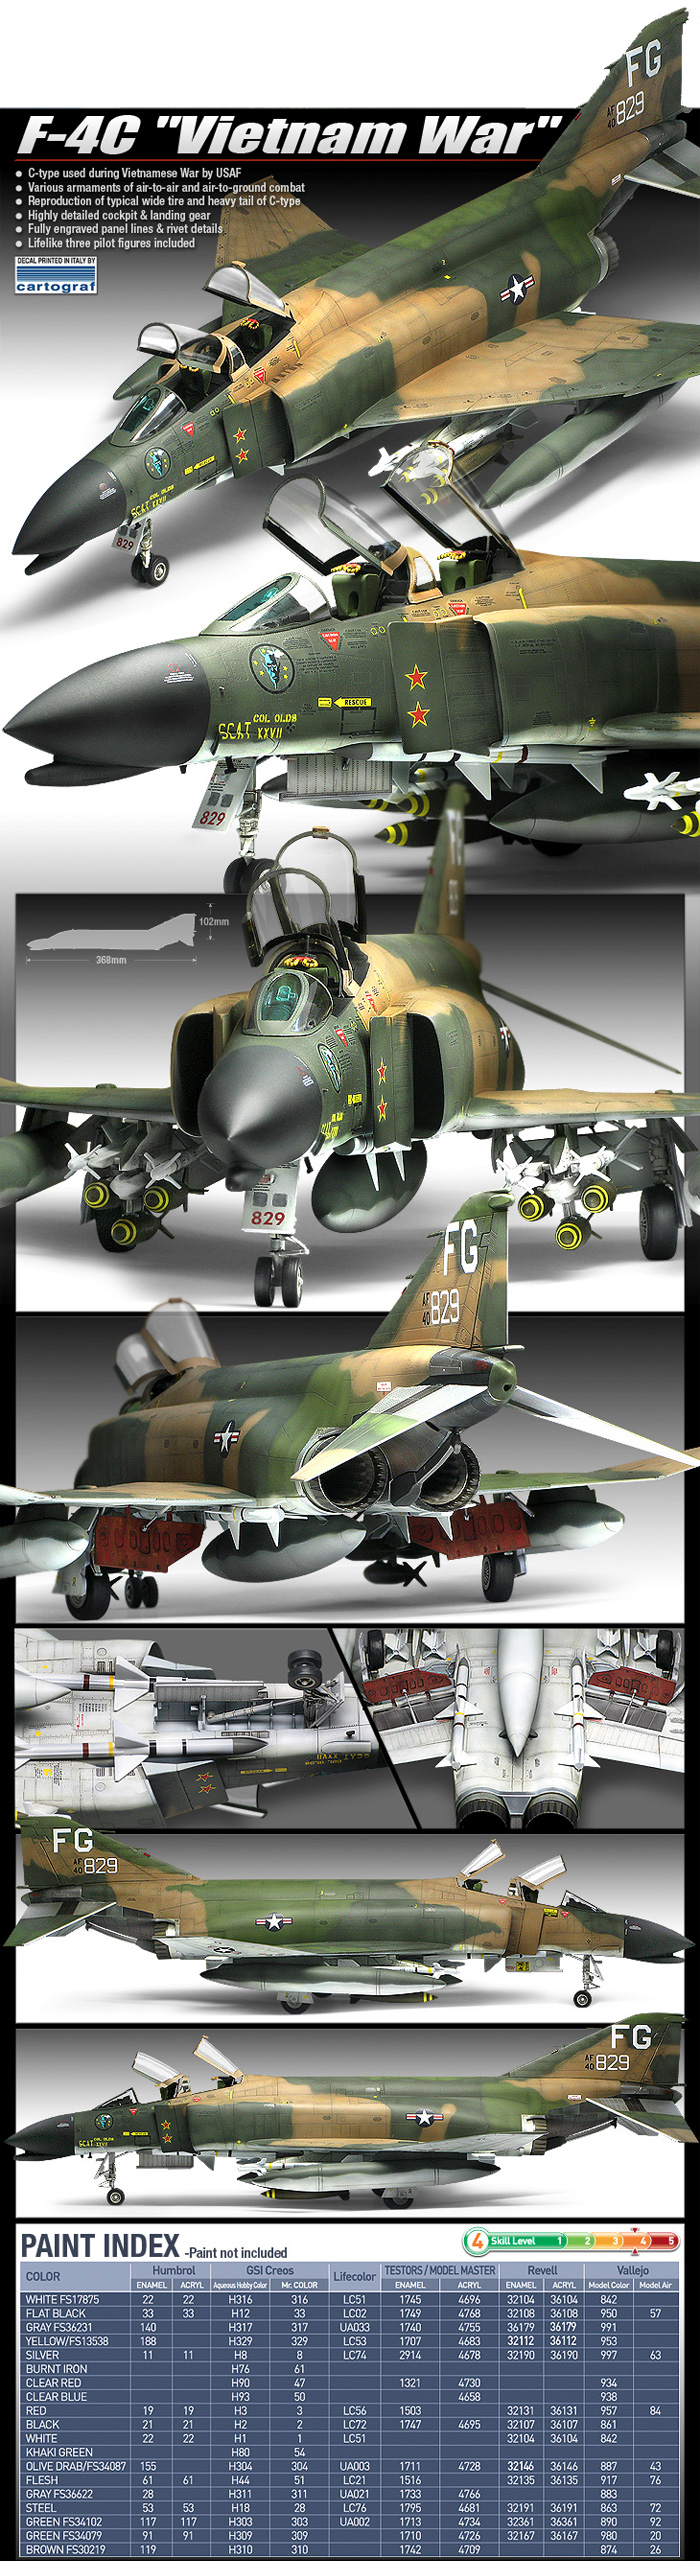 F-4C ファントム 2 ベトナム戦争 プラモデル (アカデミー 1/48 Aircrafts No.12294) 商品画像_2